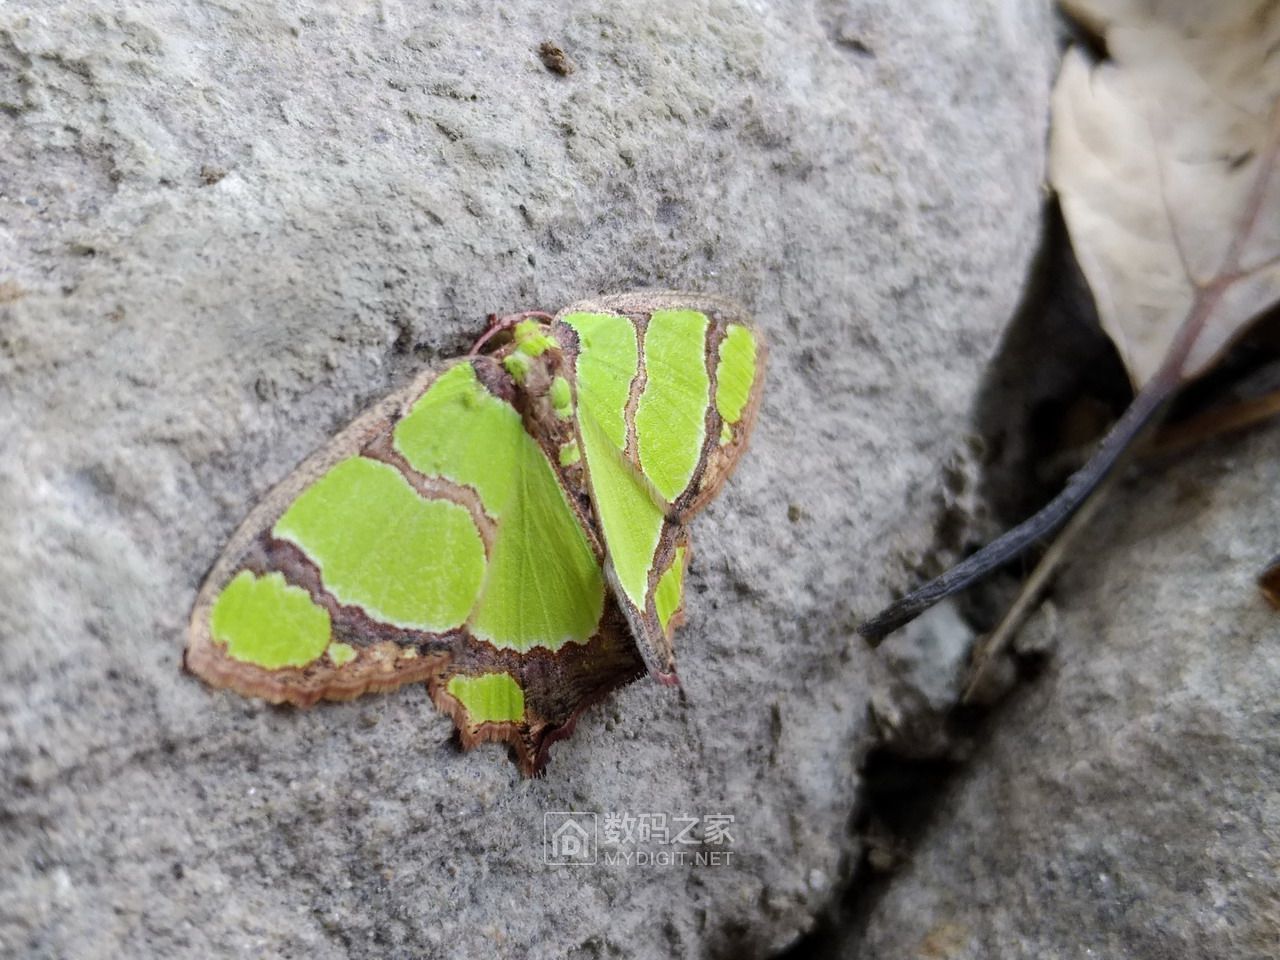 山道上绿色的蛾子稀有品种